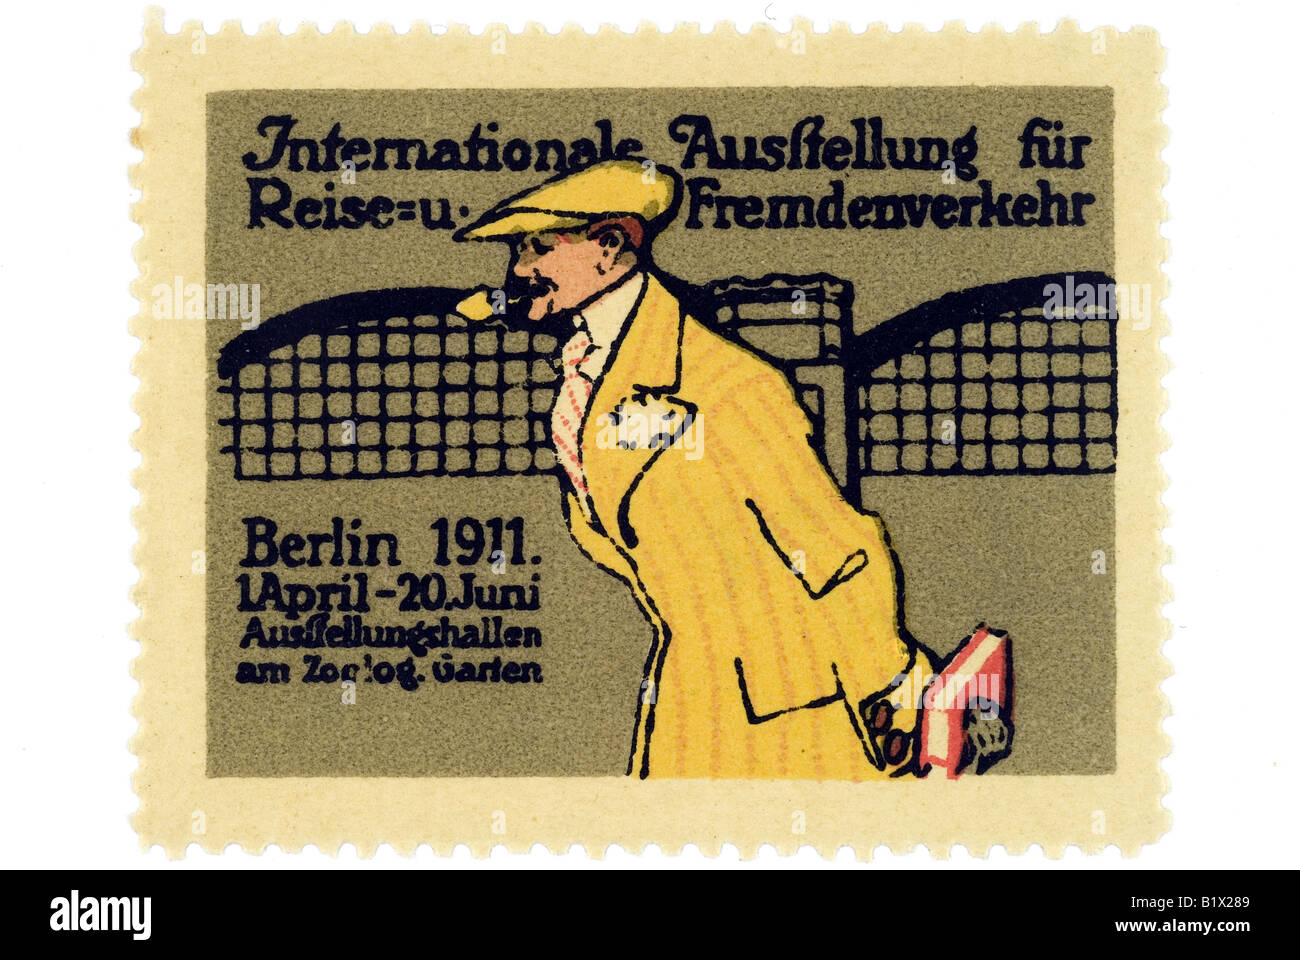 Internationale Ausstellung für Reise- u Fremdenverkehr, Berlin 1911, 1 April  - 20 Juni, Ausstellungshallen am Zoologischen Stock Photo